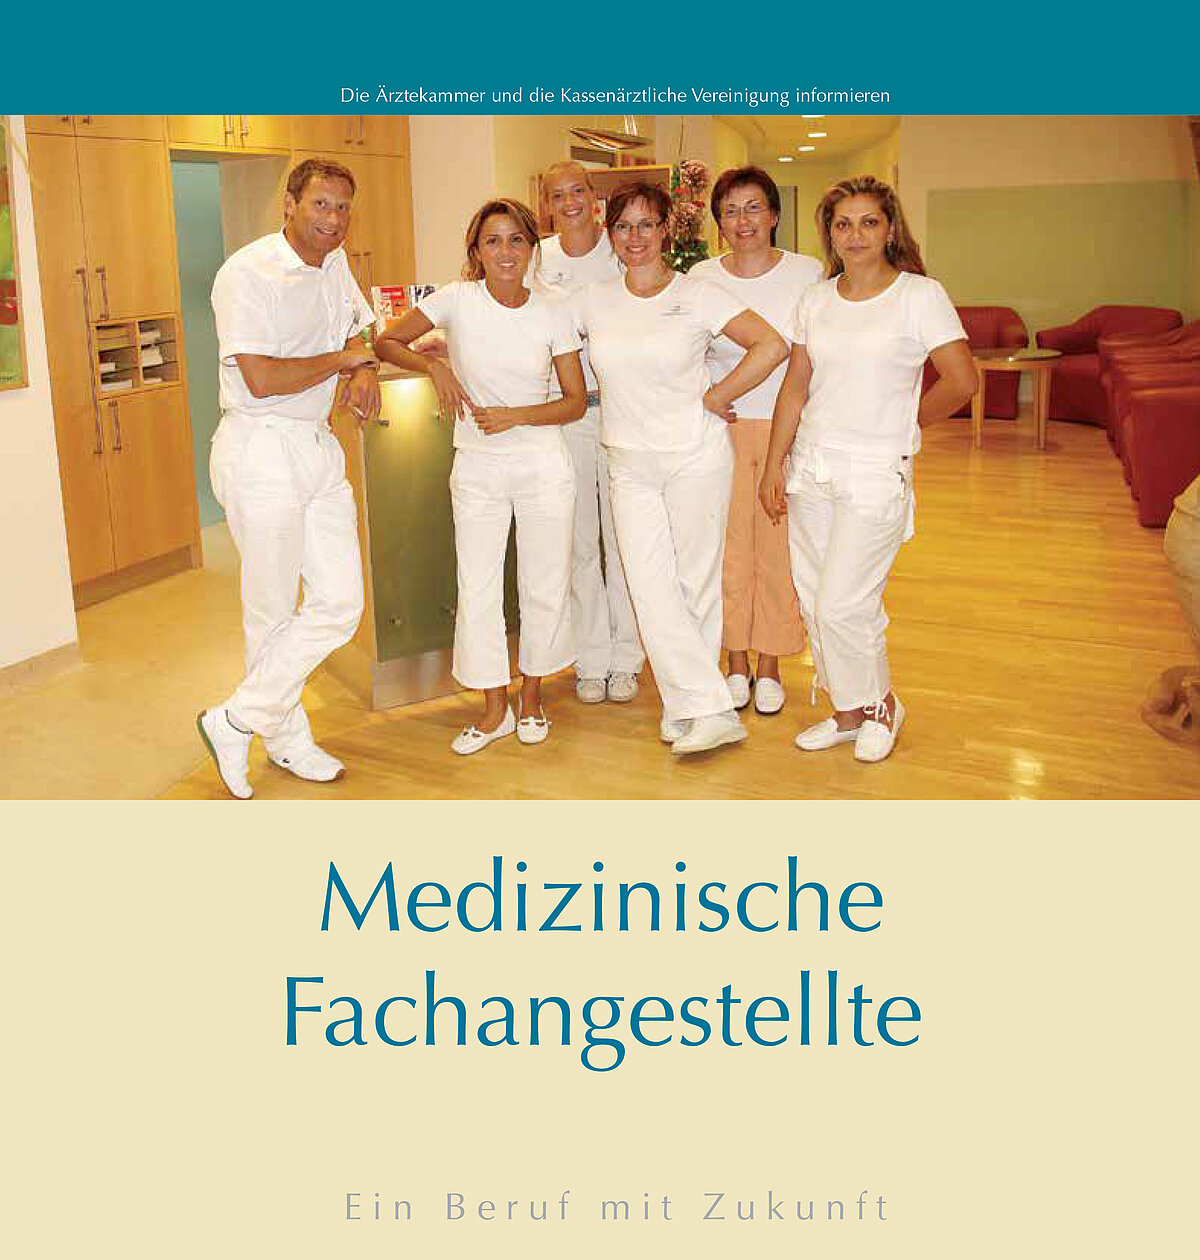 Abbildung der Titelseite der Broschüre "Medizinische Fachangestellte - Ein Beruf mit Zukunft"